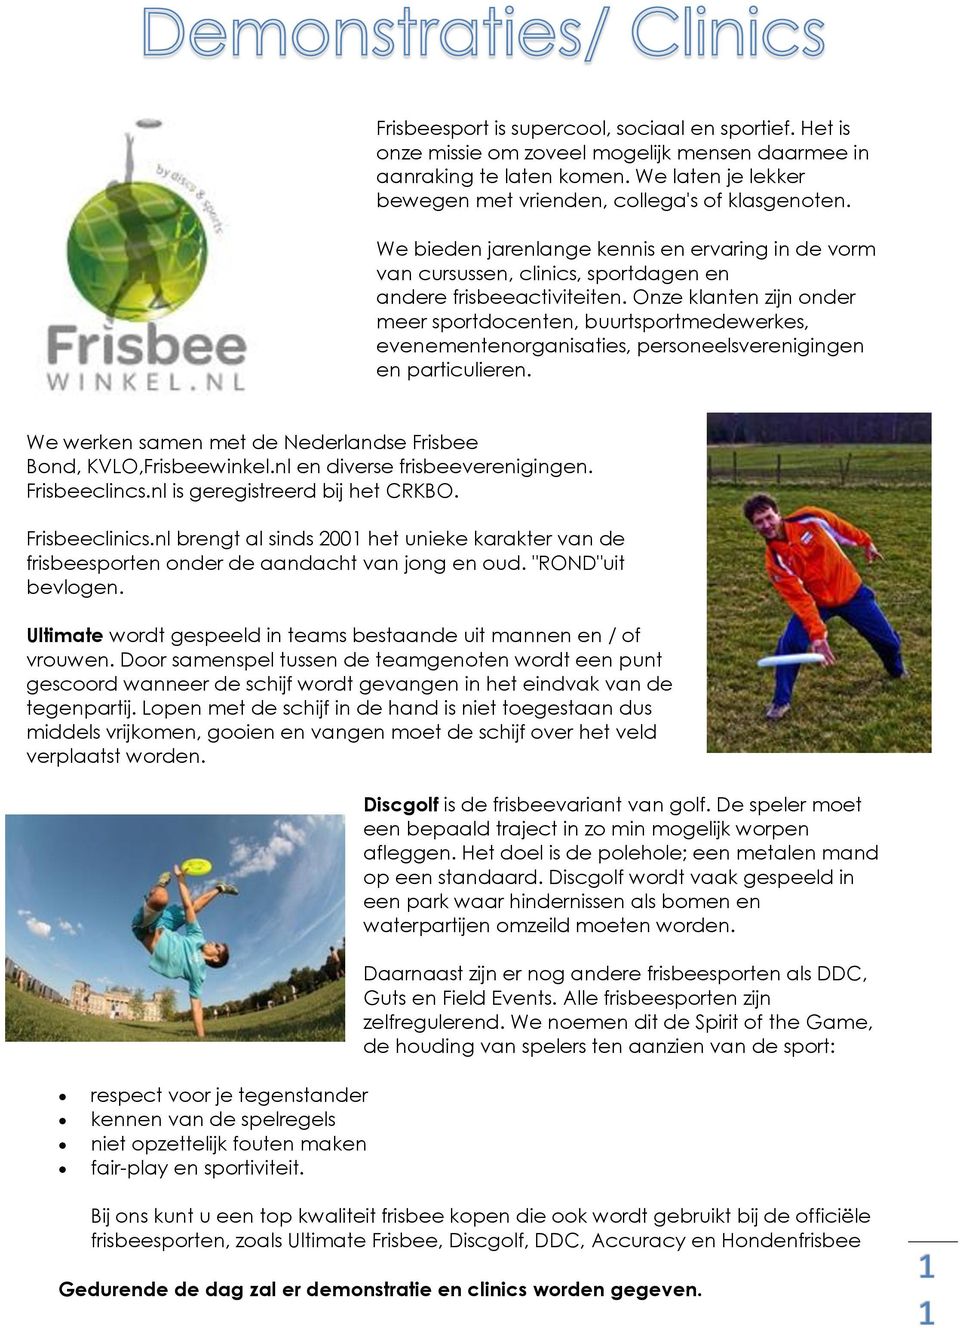 Onze klanten zijn onder meer sportdocenten, buurtsportmedewerkes, evenementenorganisaties, personeelsverenigingen en particulieren. We werken samen met de Nederlandse Frisbee Bond, KVLO,Frisbeewinkel.